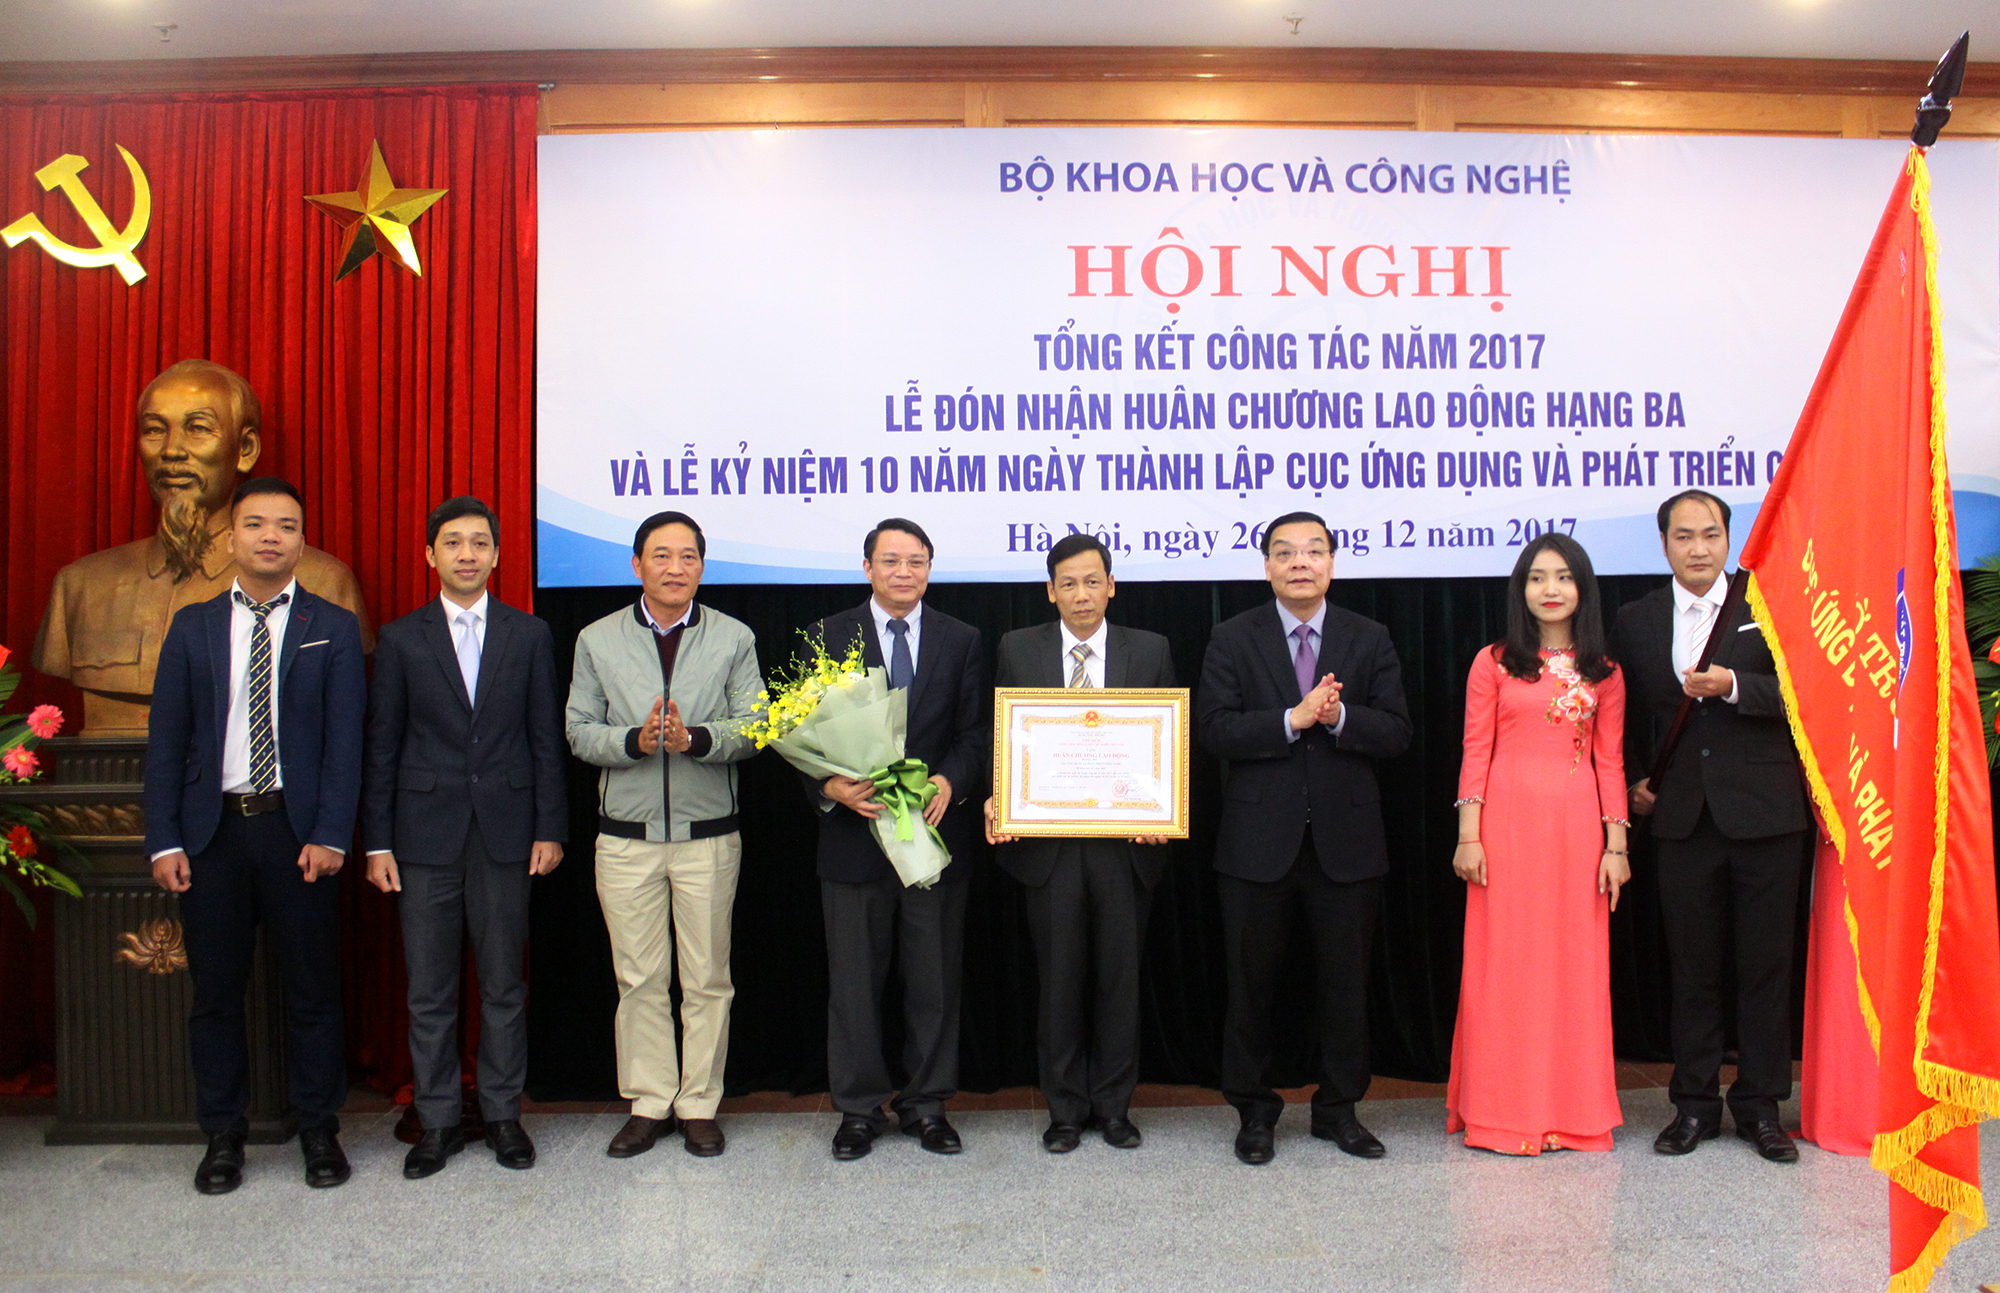 Bộ trưởng Bộ KH&CN Chu Ngọc Anh thay mặt Lãnh đạo Đảng và Nhà nước trao tặng Huân chương Lao động hạng Ba cho tập thể Cục Ứng dụng và Phát triển công nghệ.